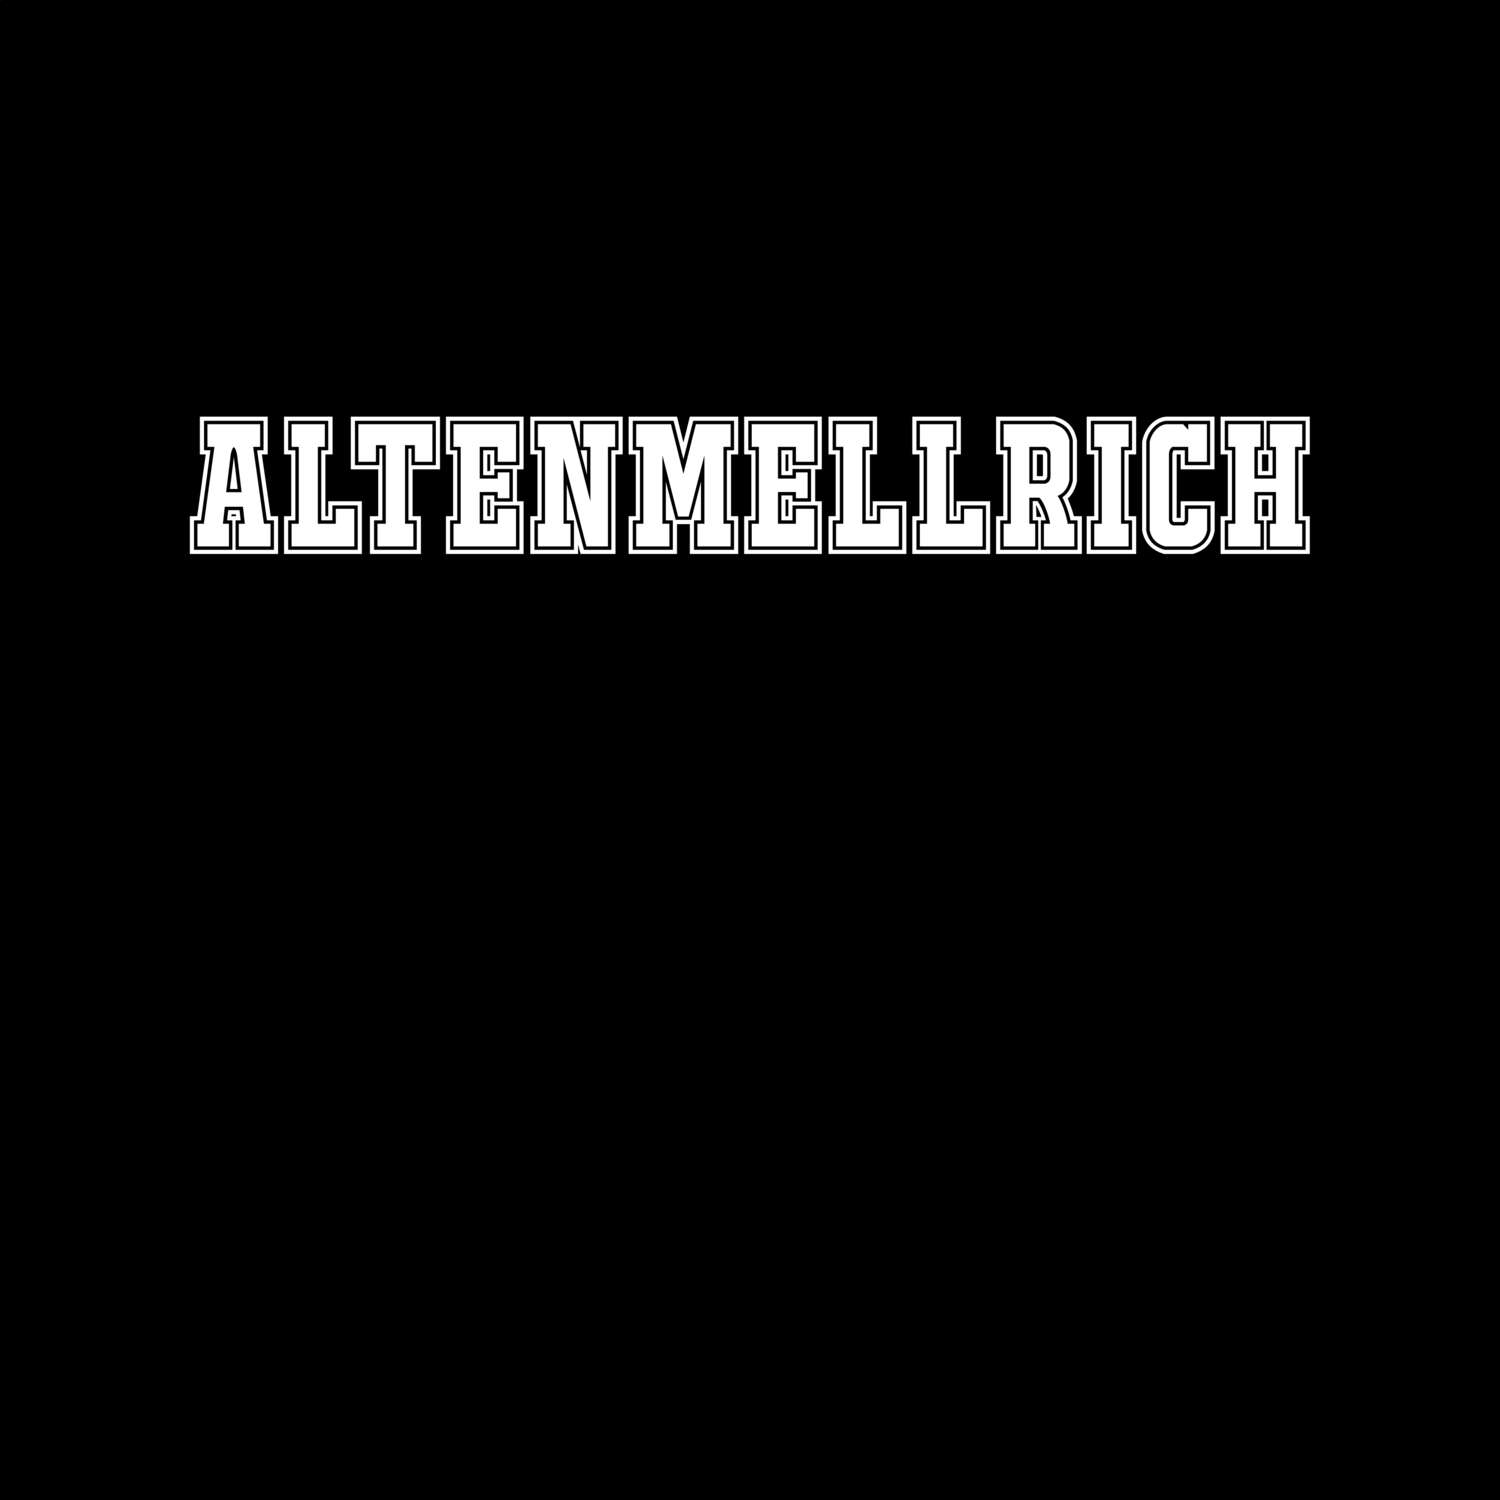 Altenmellrich T-Shirt »Classic«